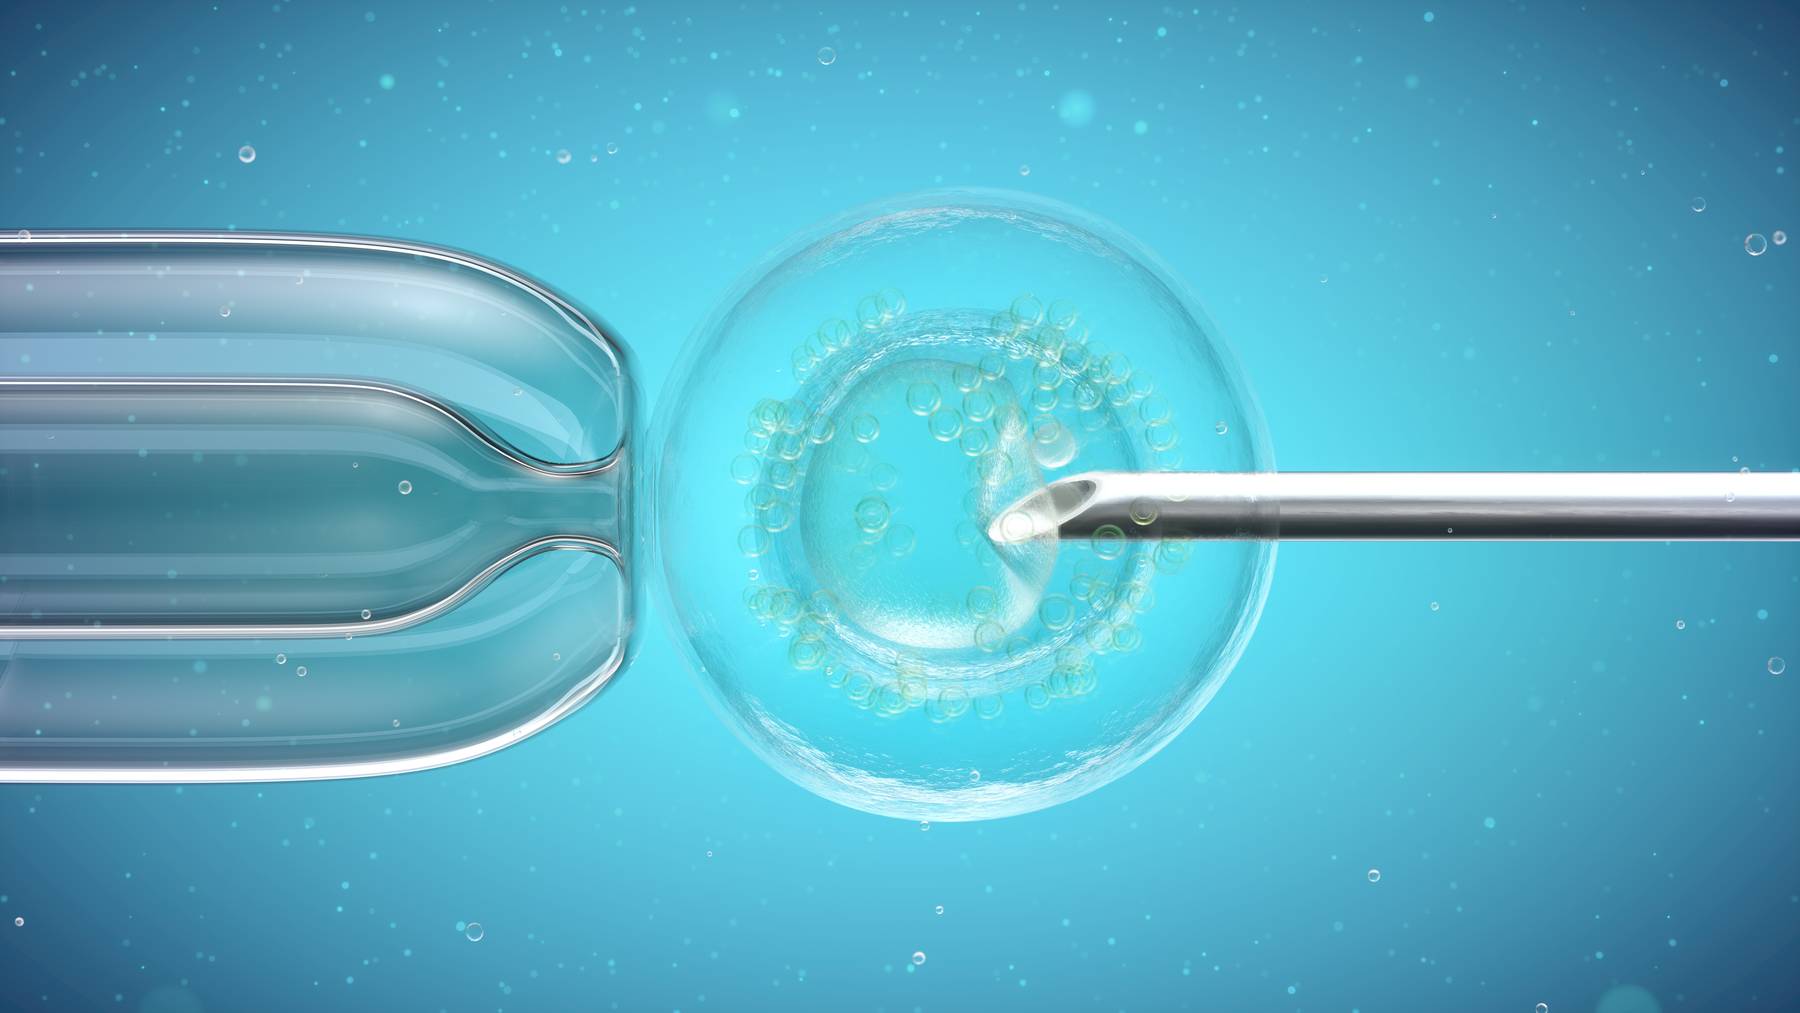 Bei einer In-Vitro-Fertilisation befruchten die Samenzellen in einer Glasschale die Eizellen. Danach werden der Frau bis zu drei Embryos wieder in die Gebärmutter eingesetzt.